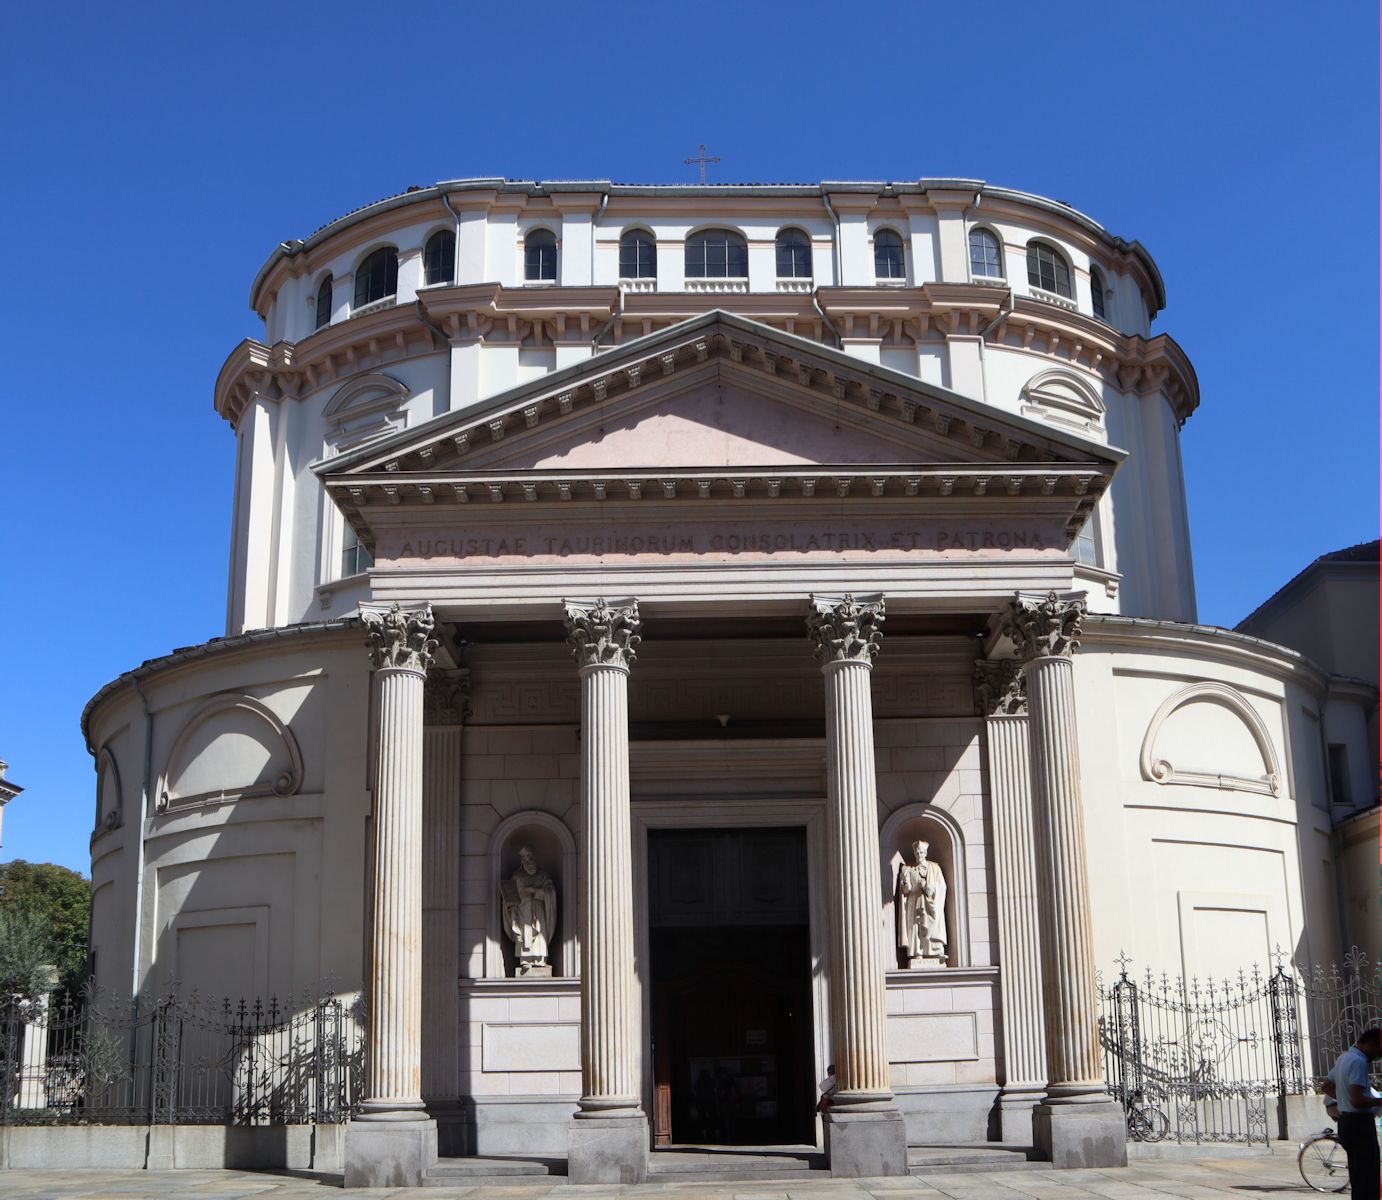 Sanktuarium Santa Maria della Consolazione in Turin